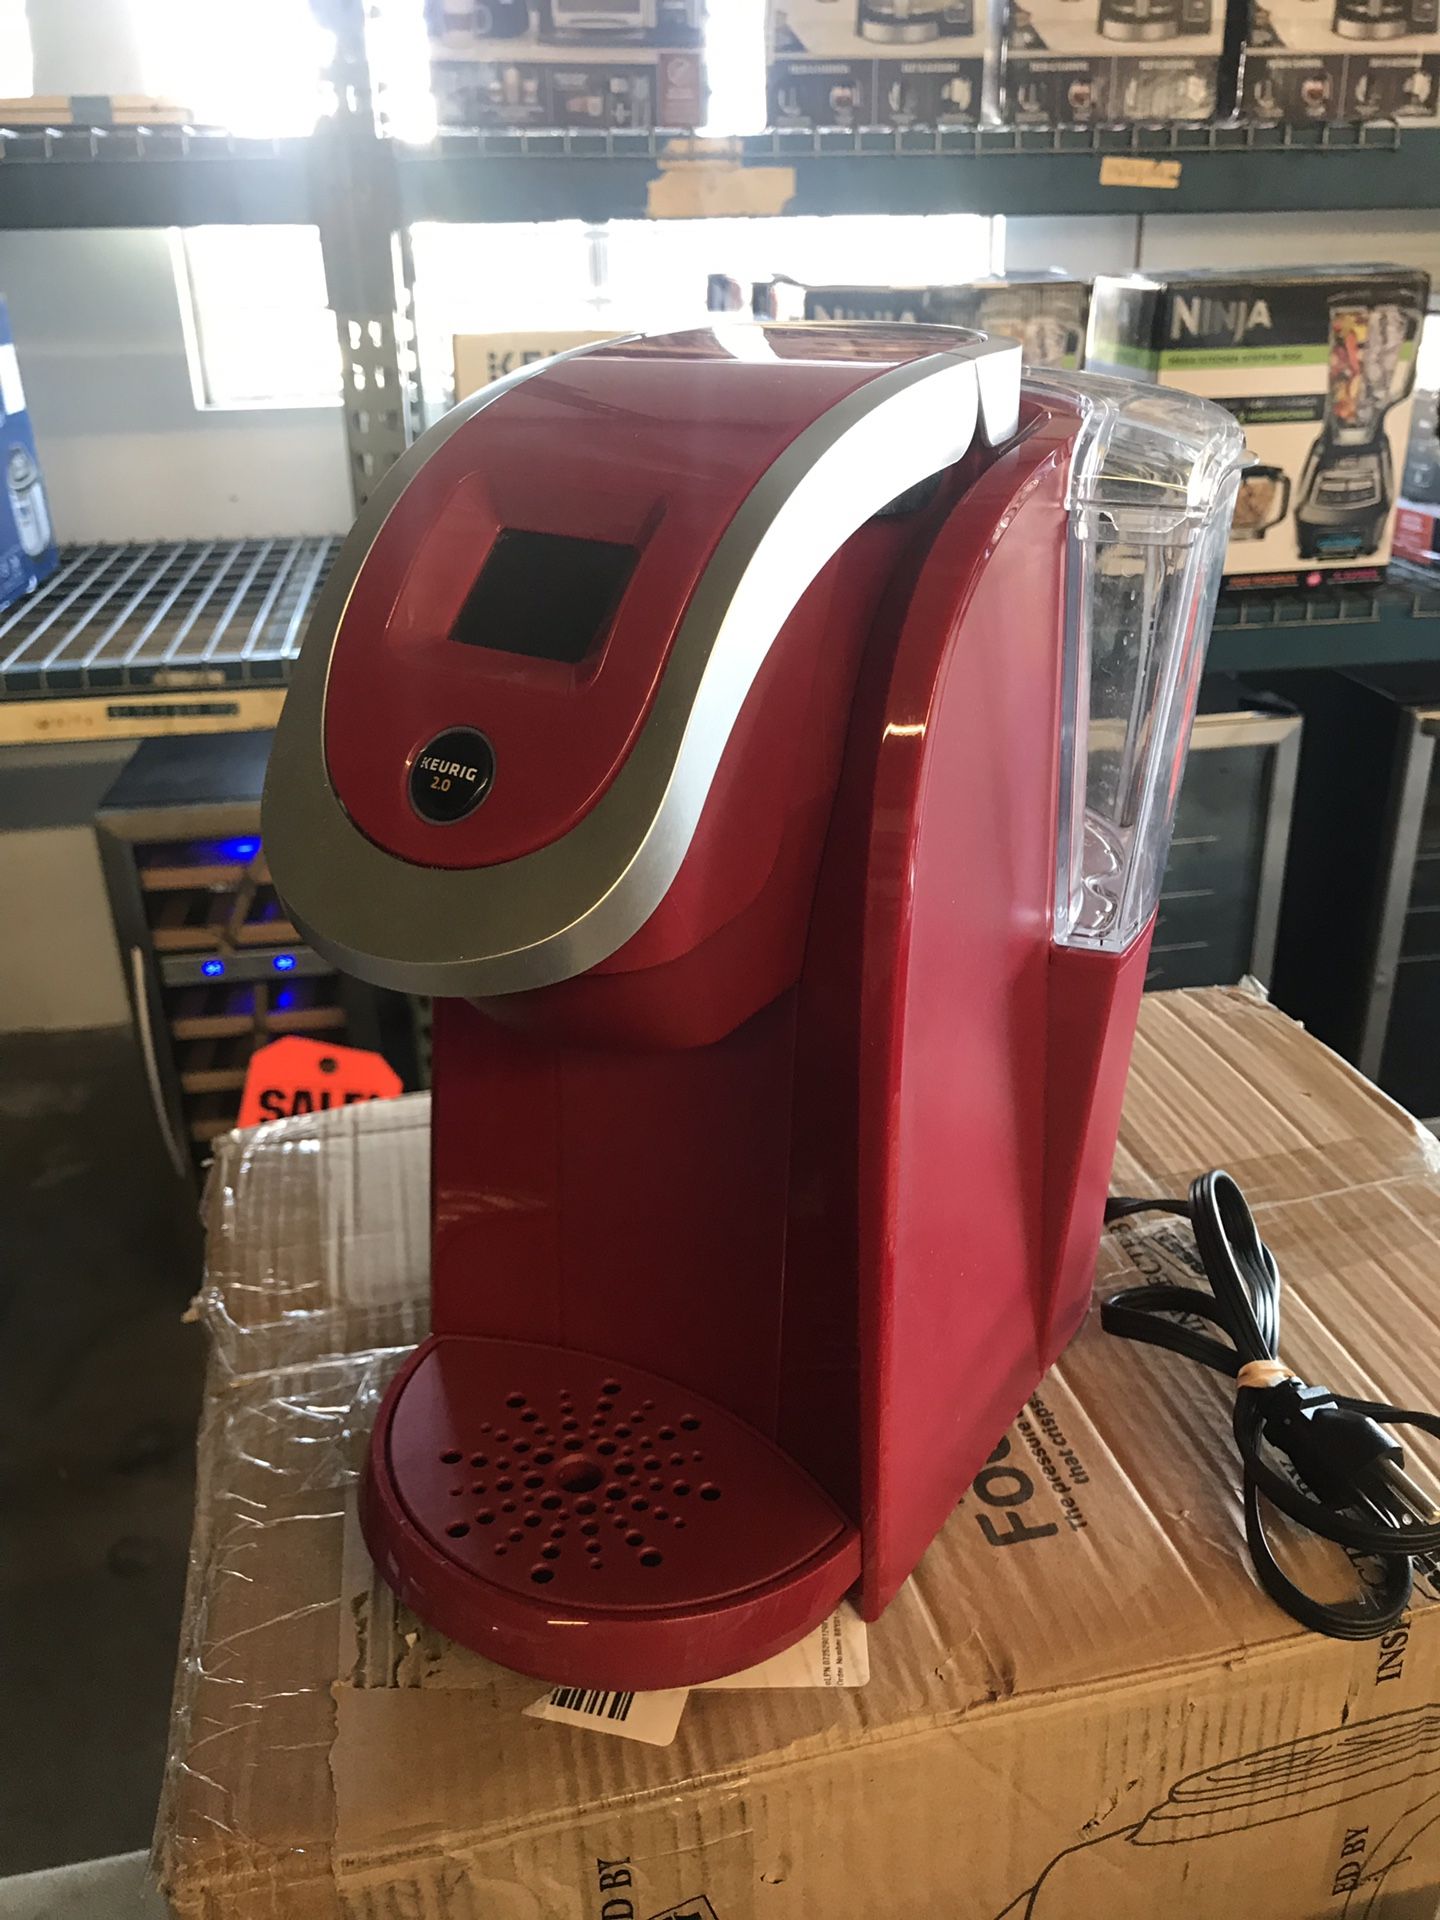 Used Keurig K200 2.0 coffee maker brewer